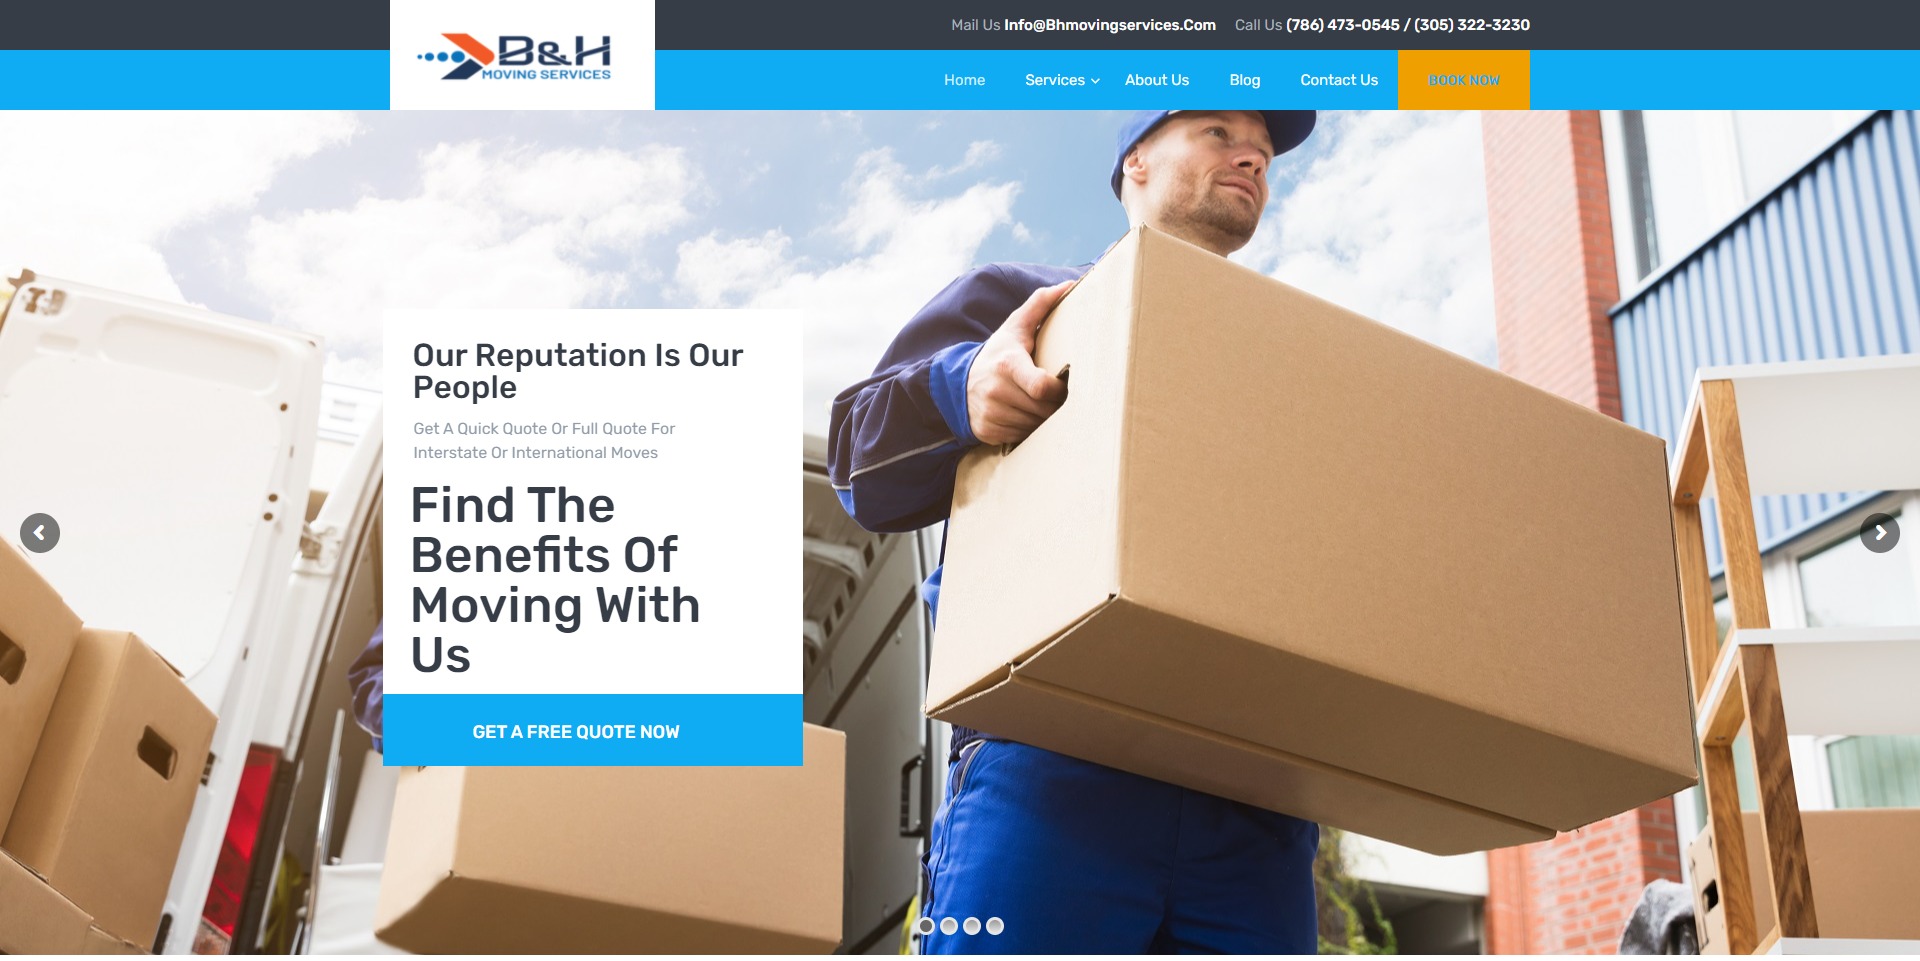 Moving Services Website Design